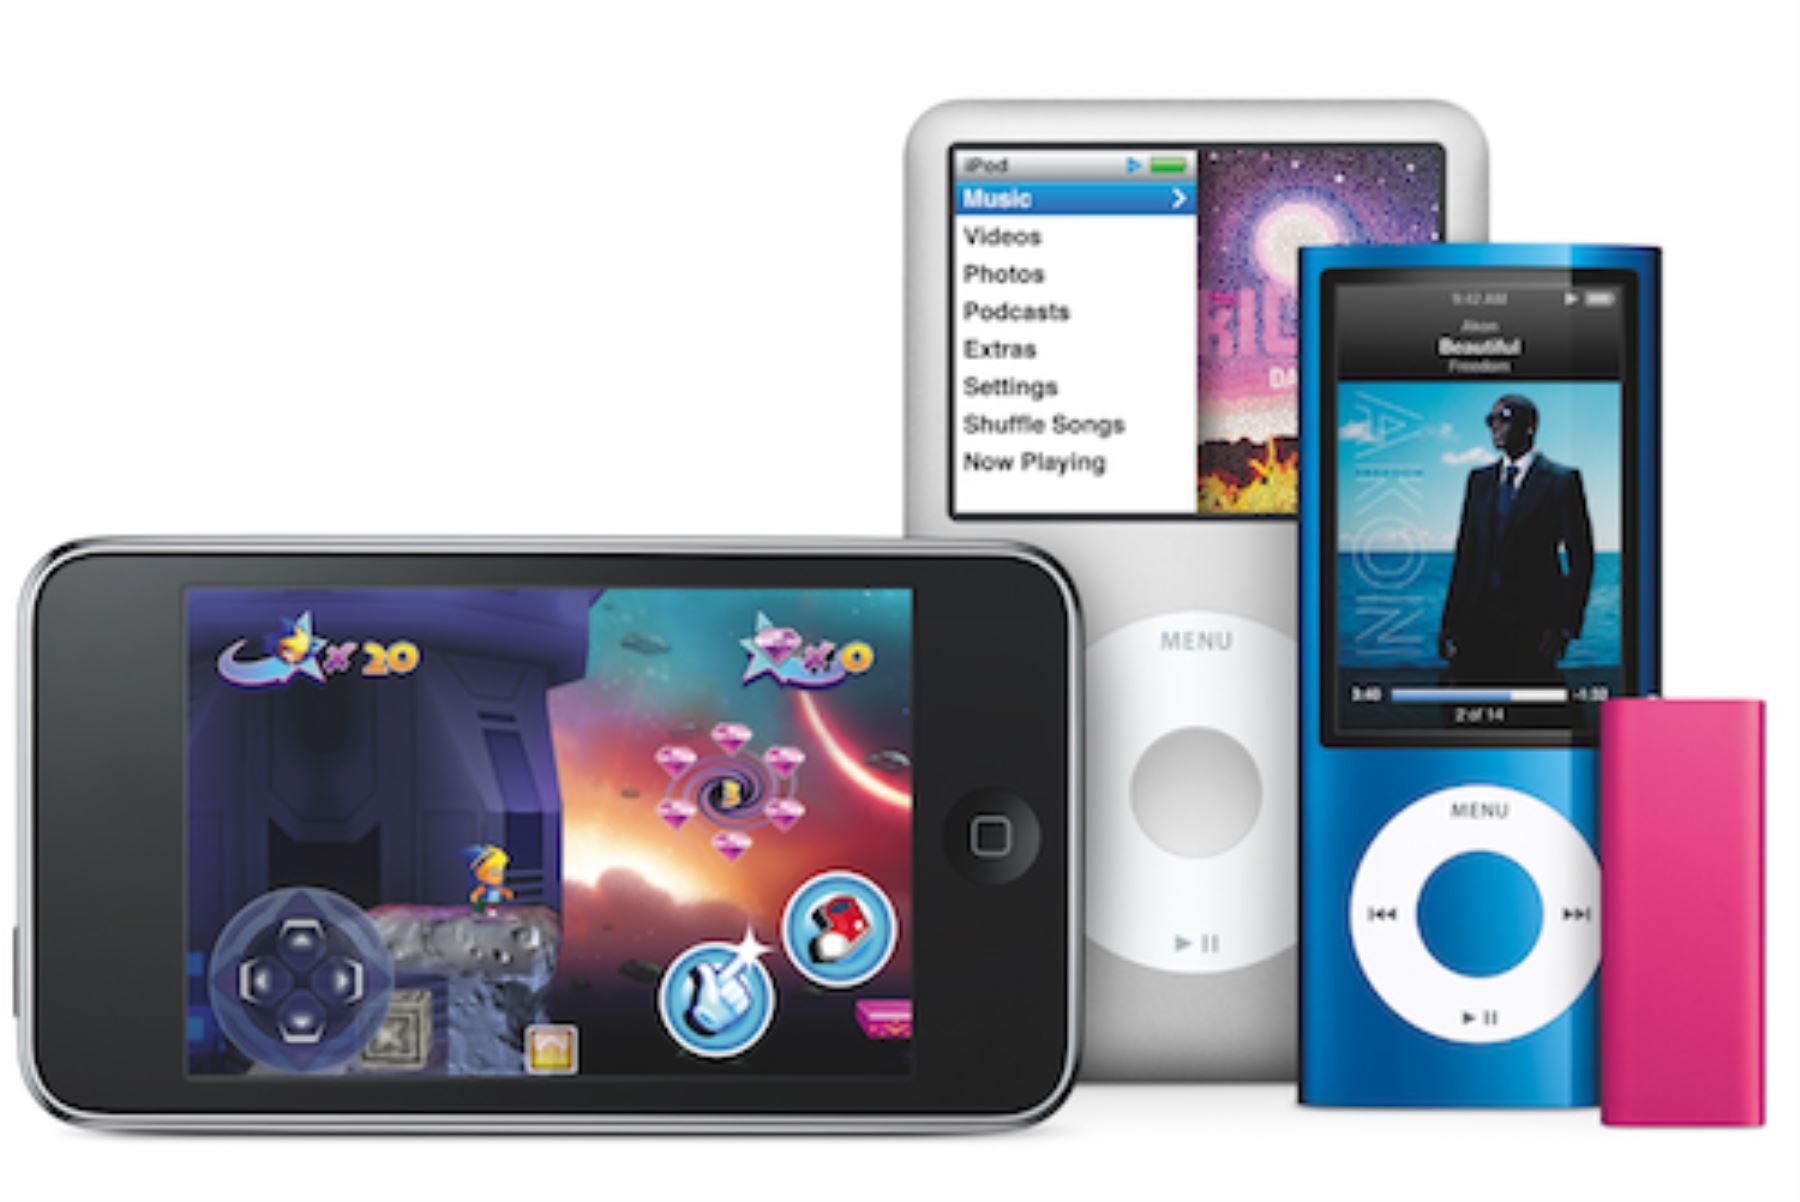 El final de una era: Apple anuncia que dejará de fabricar el iPod, después de 20 años